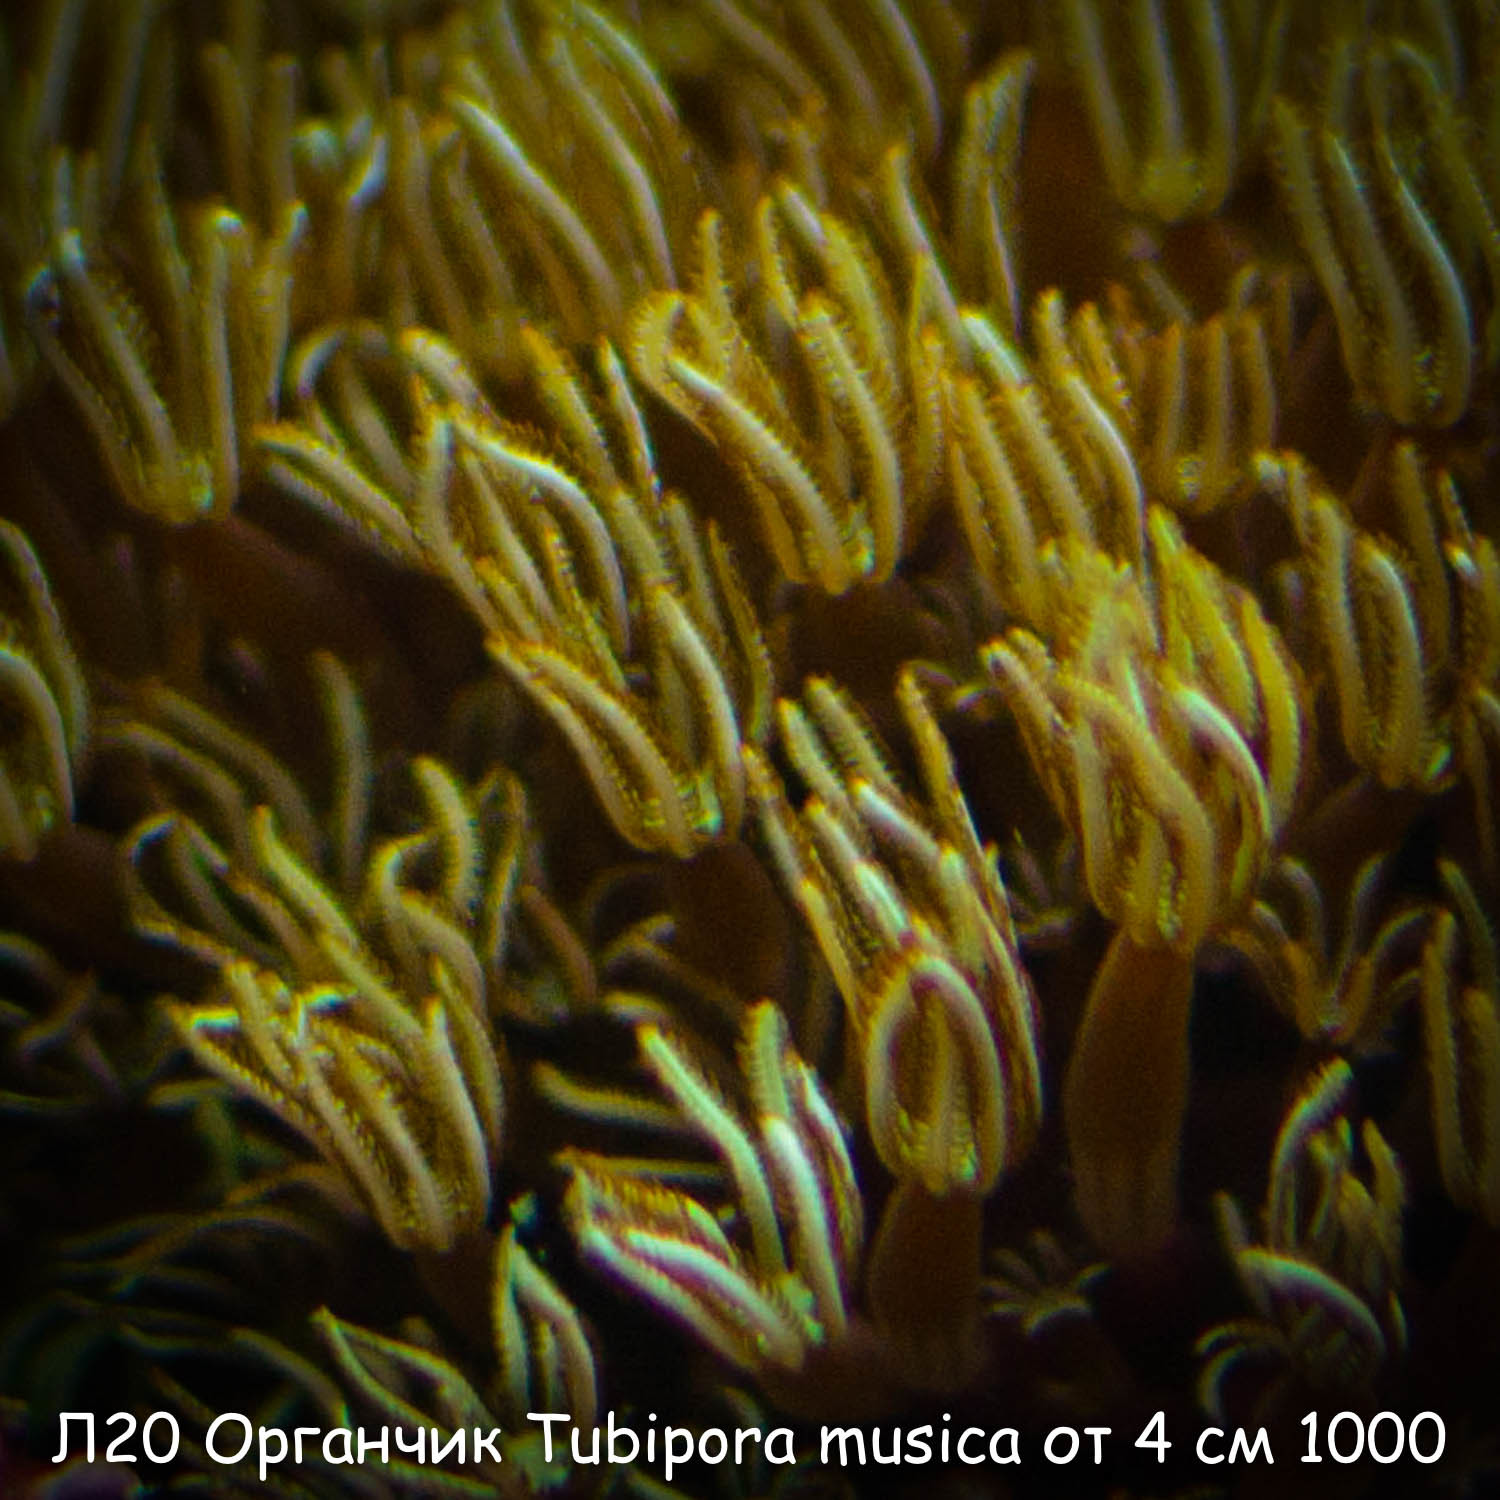 20  Tubipora musica  4  1000